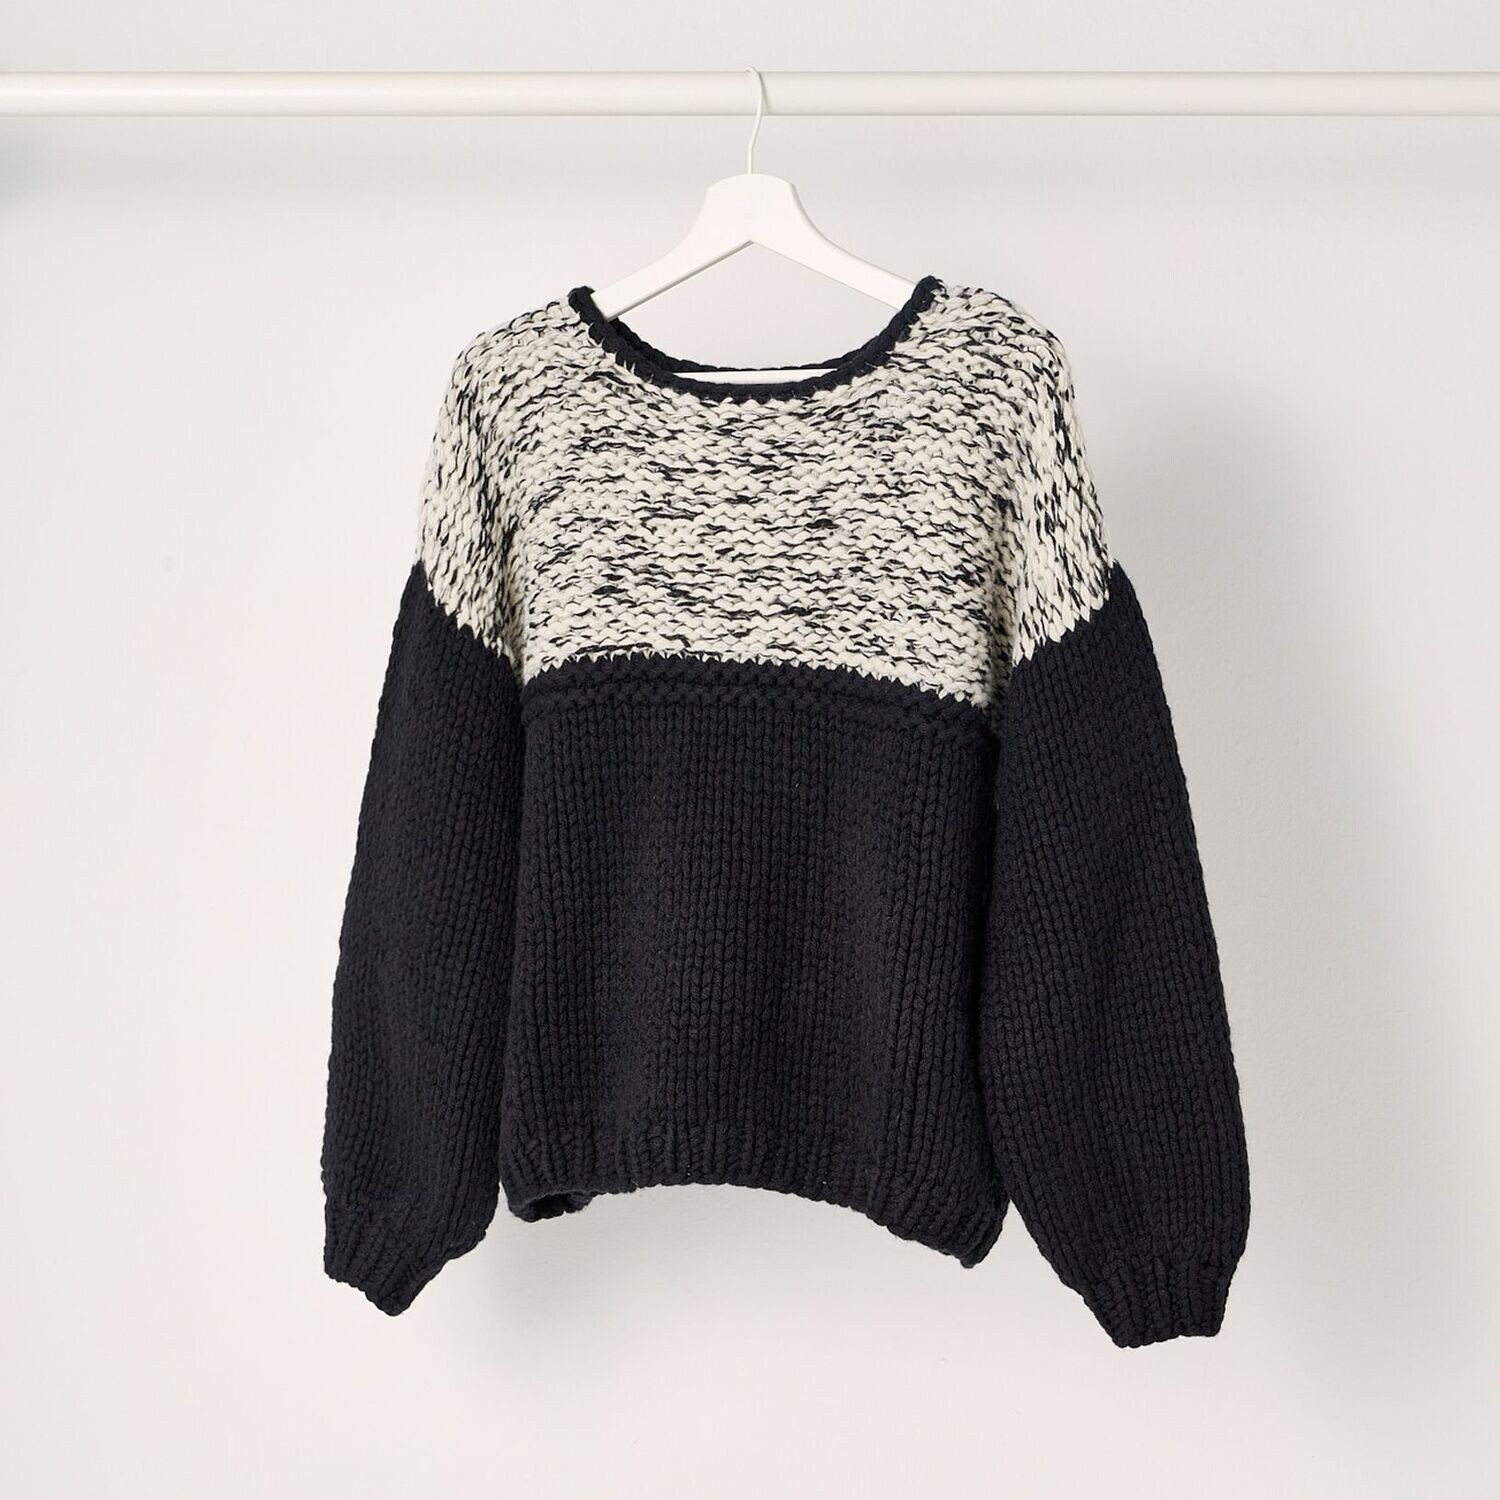 Handstrick-Sweater JULIE, Größe: M/L